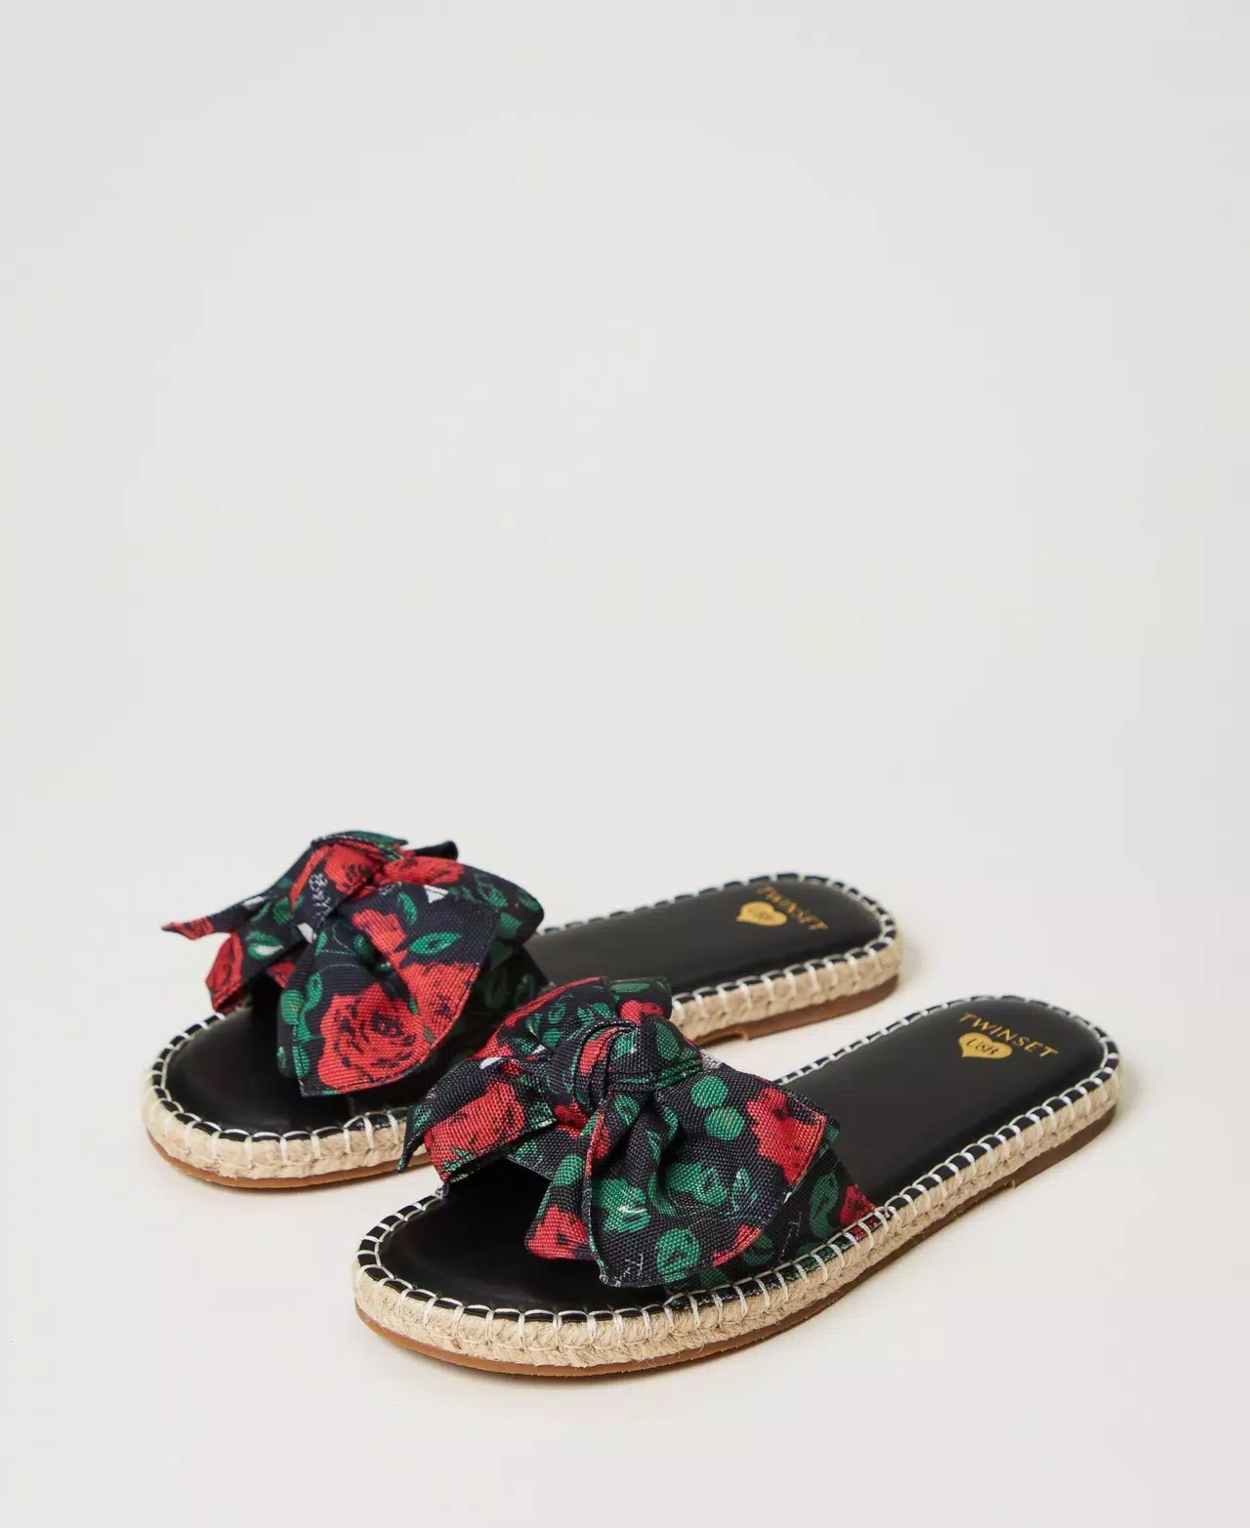 ALT: 12 sandalias cmodas para pies delicados (y muy bonitas), de El Corte Ingls a Hispanitas